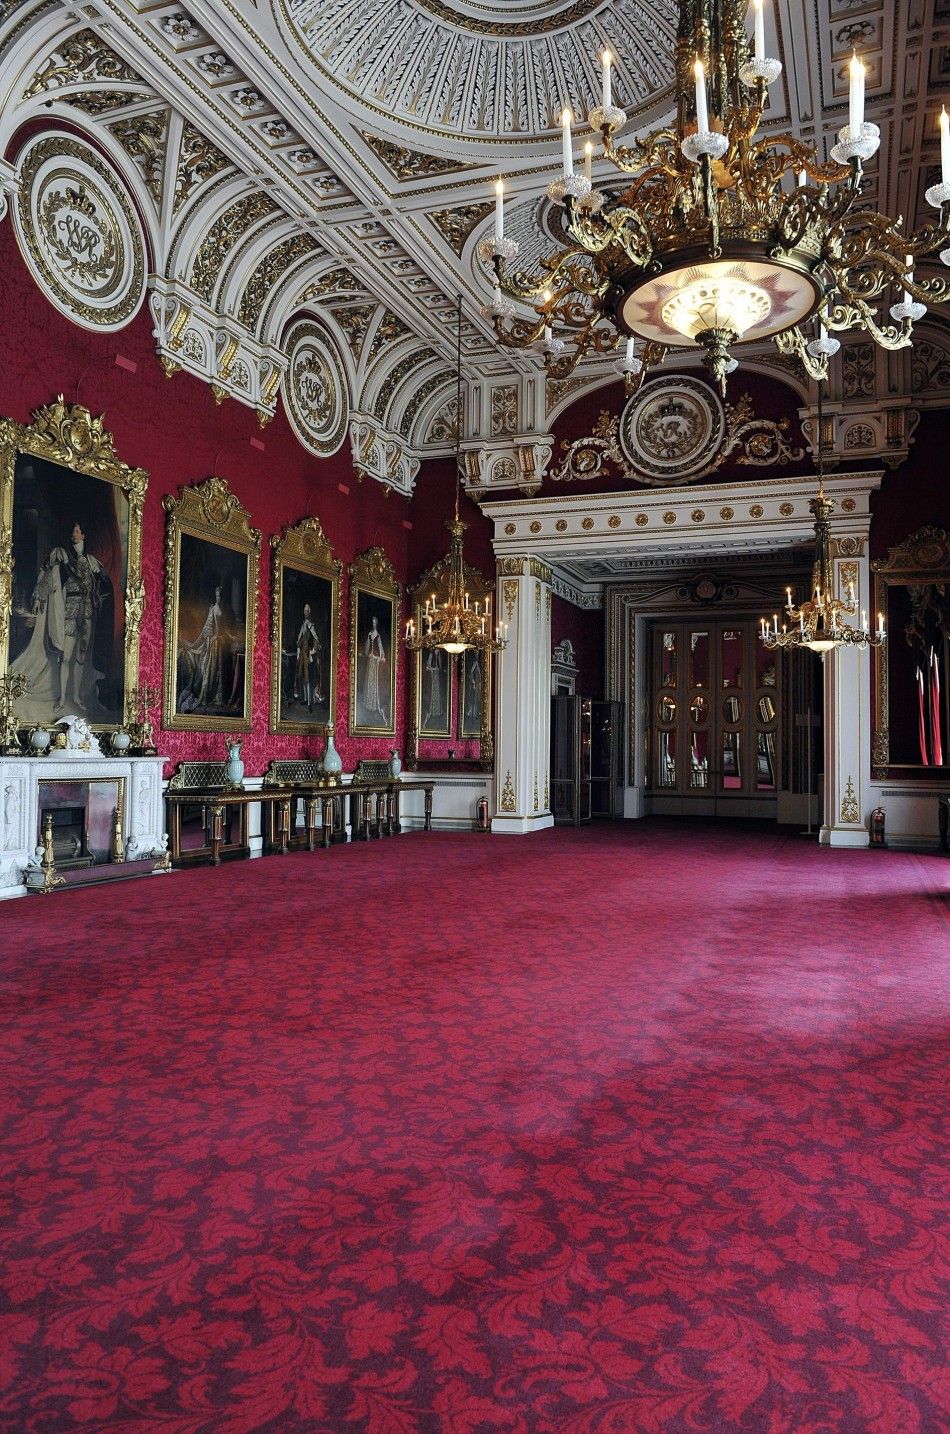 Buckingham Palace reveals royal wedding secrets